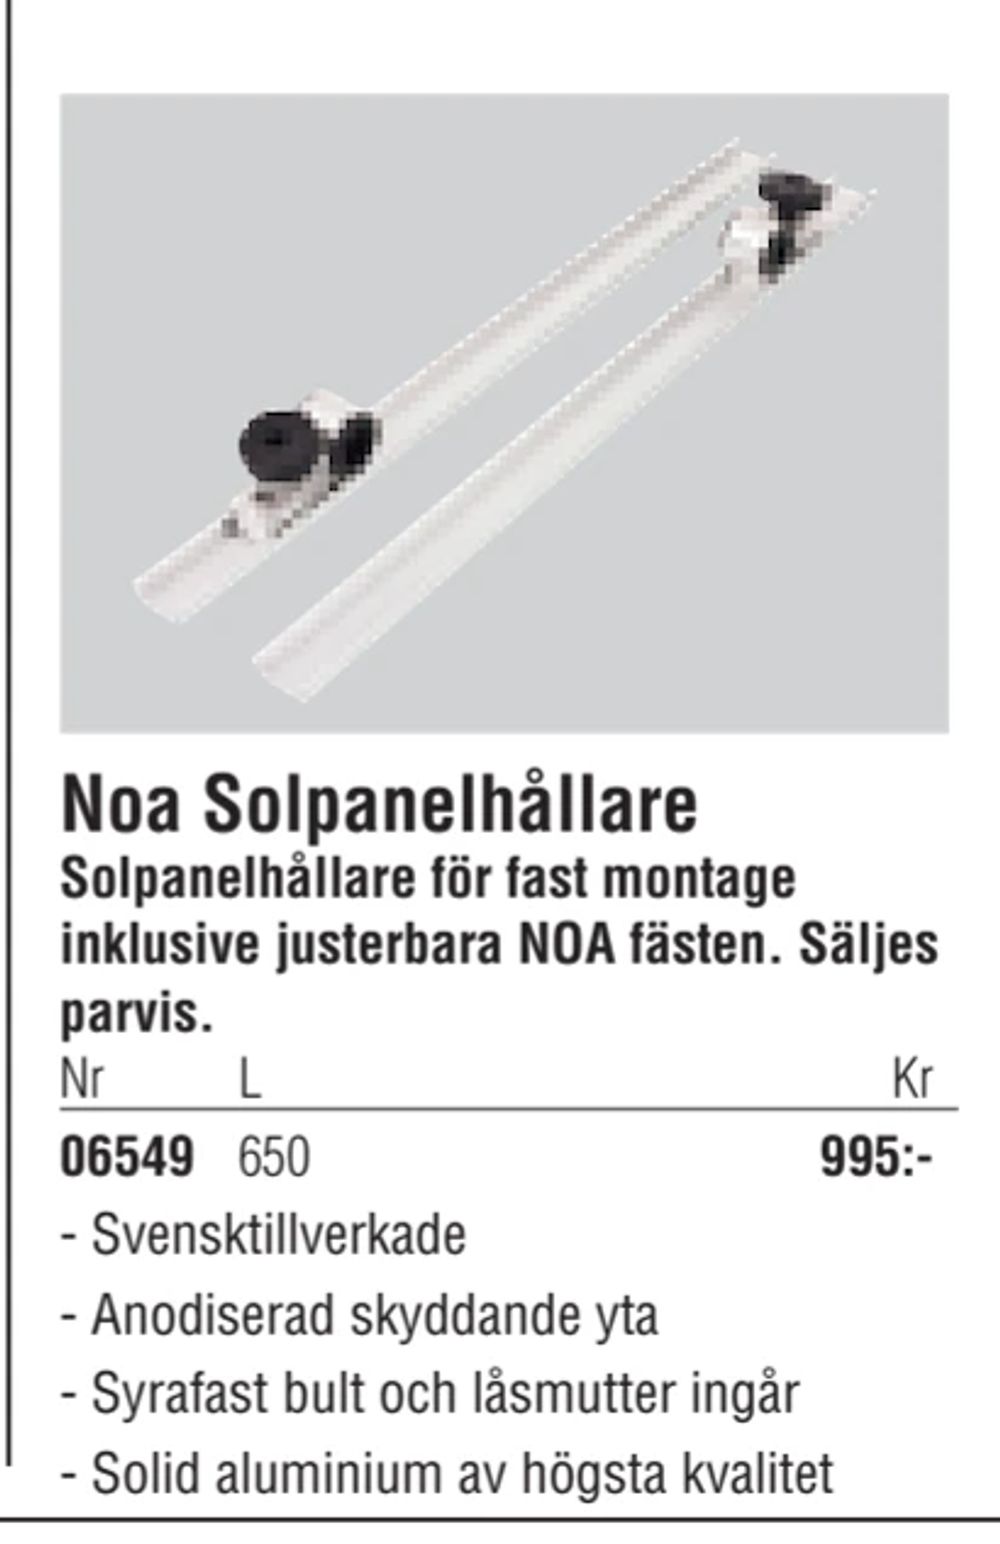 Erbjudanden på Noa Solpanelhållare från Erlandsons Brygga för 995 kr